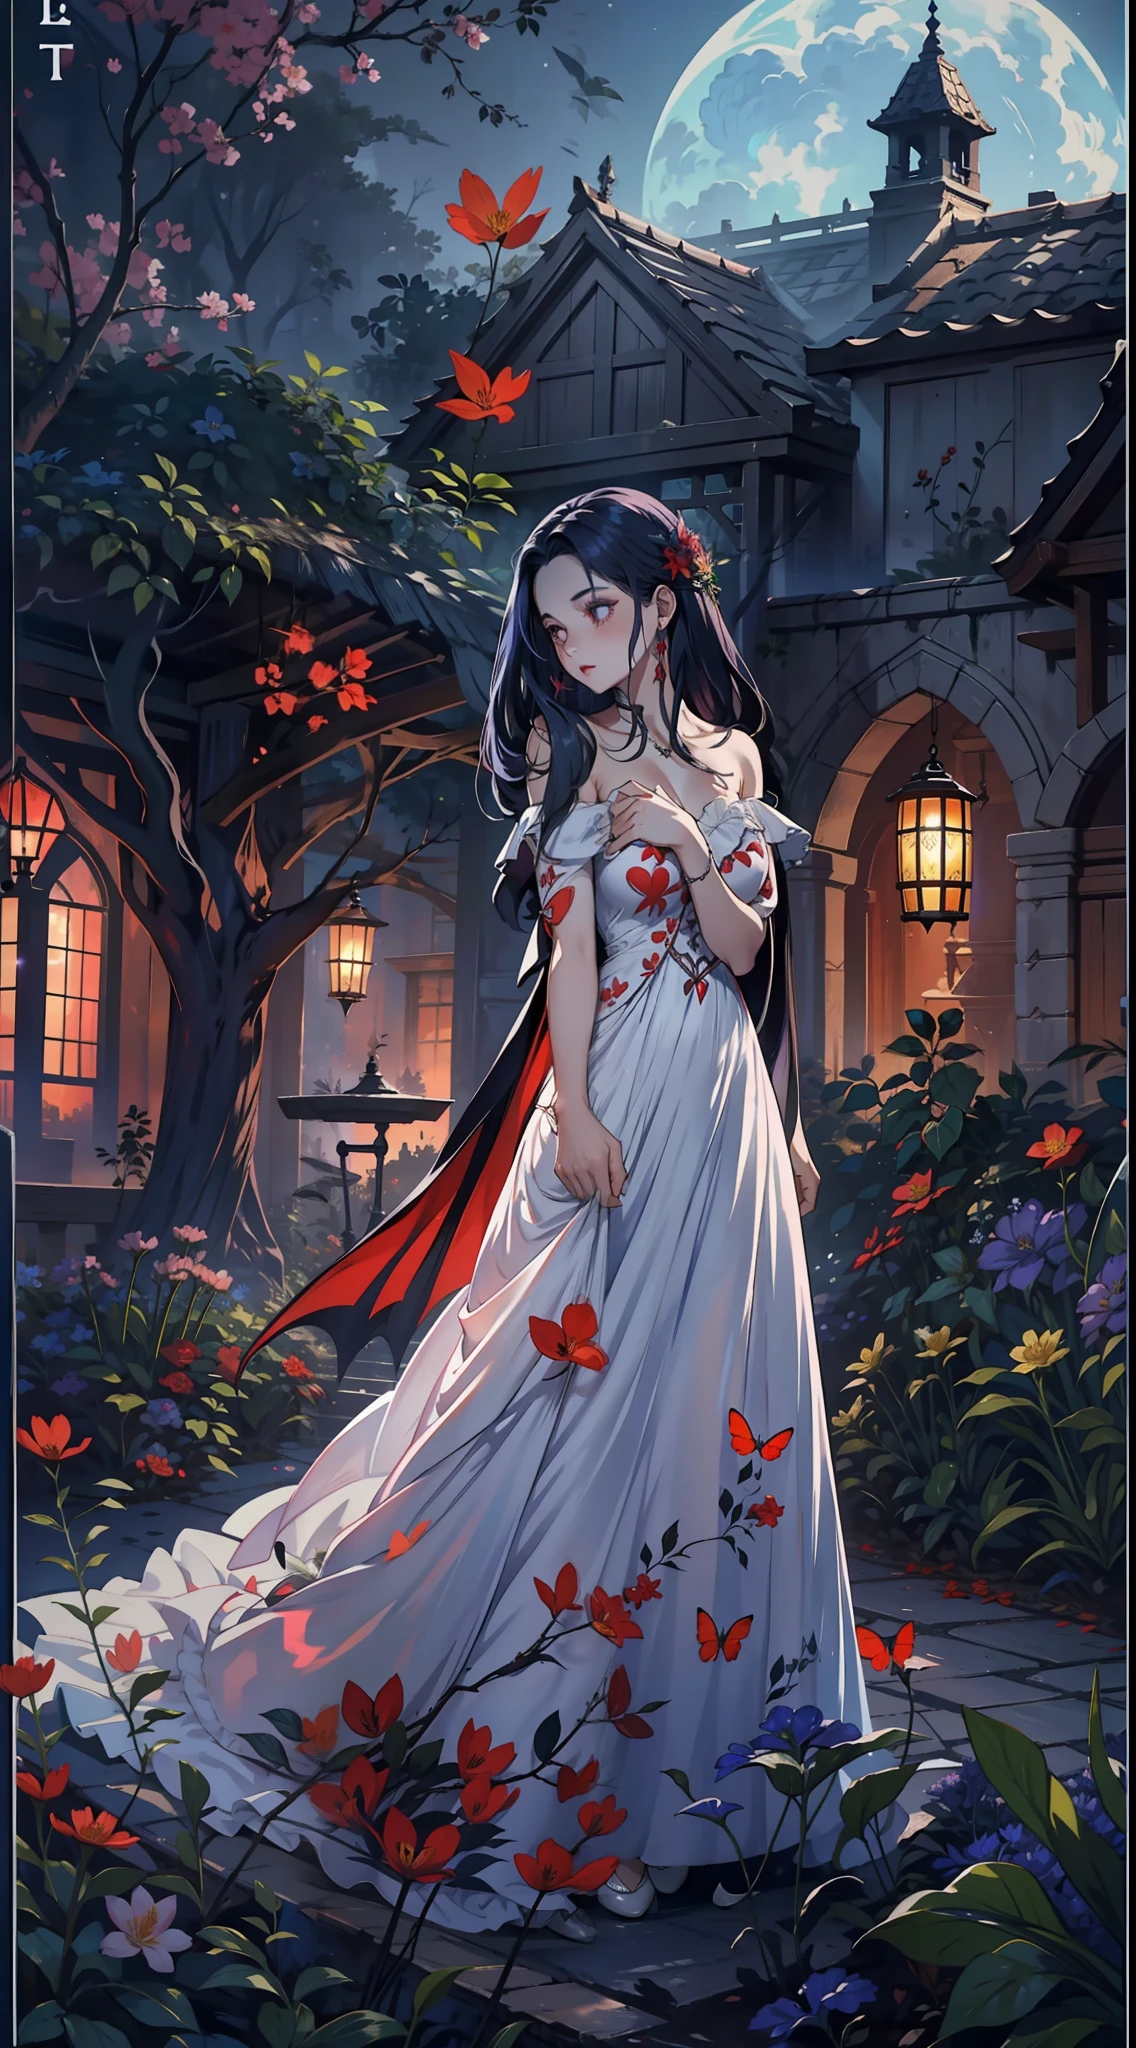 春天的节日, 一个美丽的吸血鬼在晴朗的夜晚穿过花园. Ella lleva una guirnalda de flores en su cabello, 你的眼神冰冷，你的皮肤缺乏色素., 拉尔戈, 心形领口素色连衣裙.